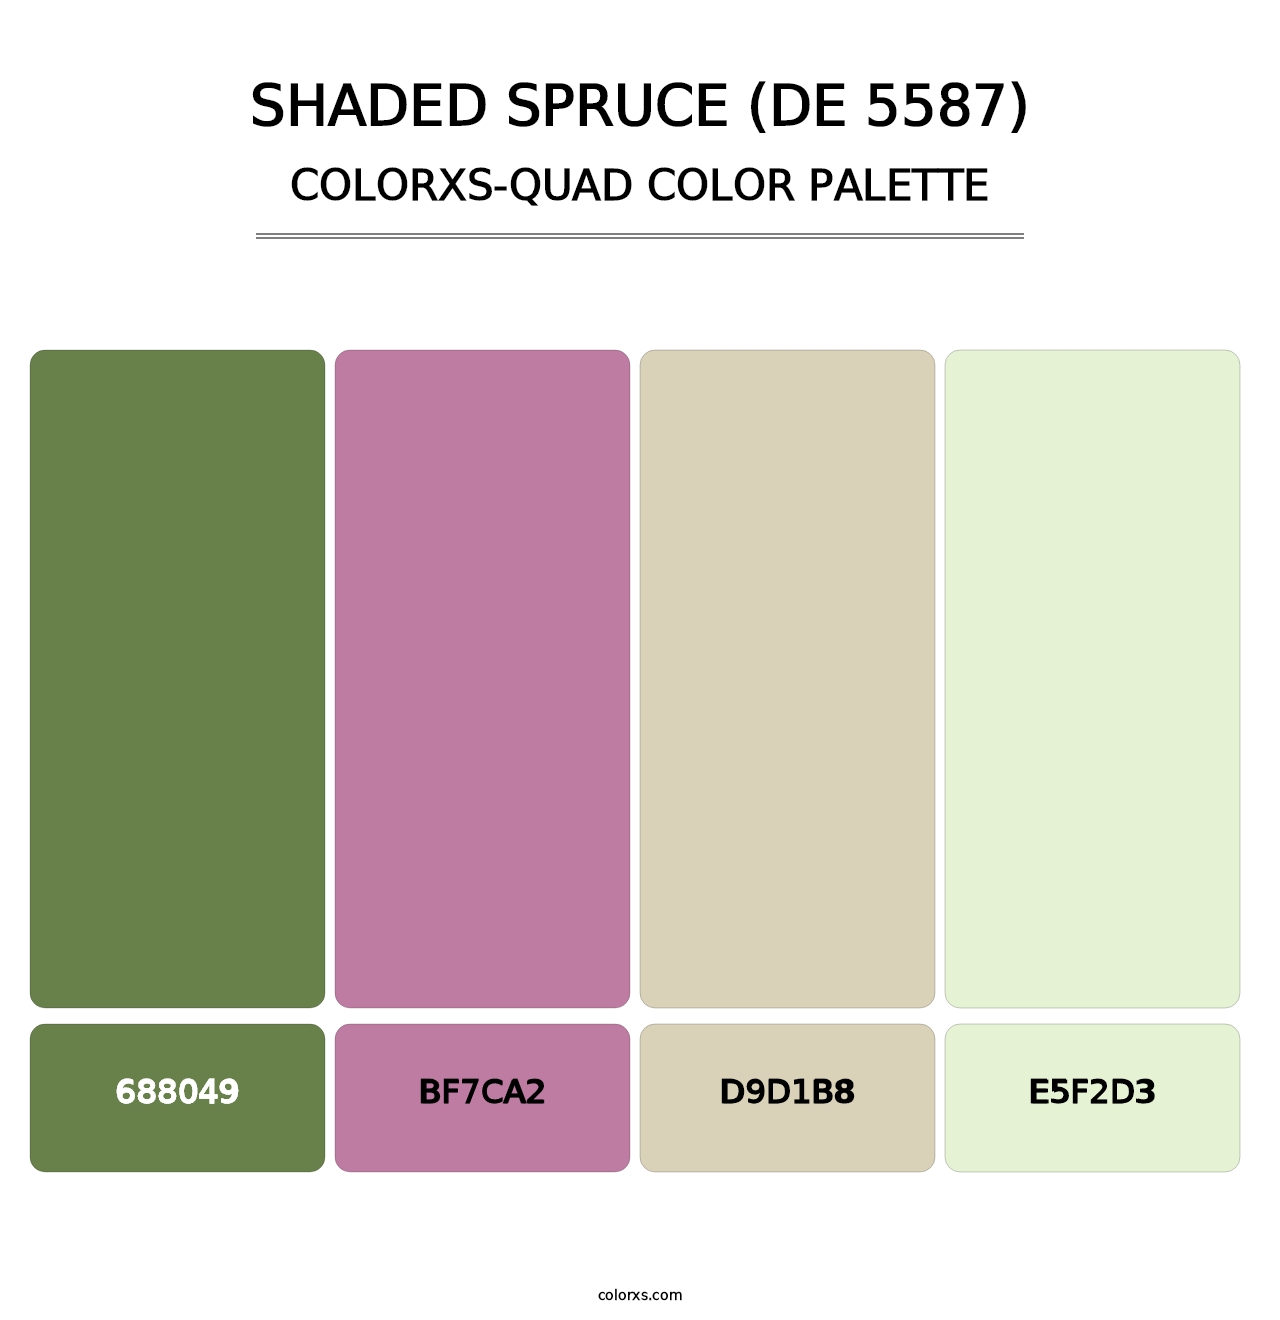 Shaded Spruce (DE 5587) - Colorxs Quad Palette